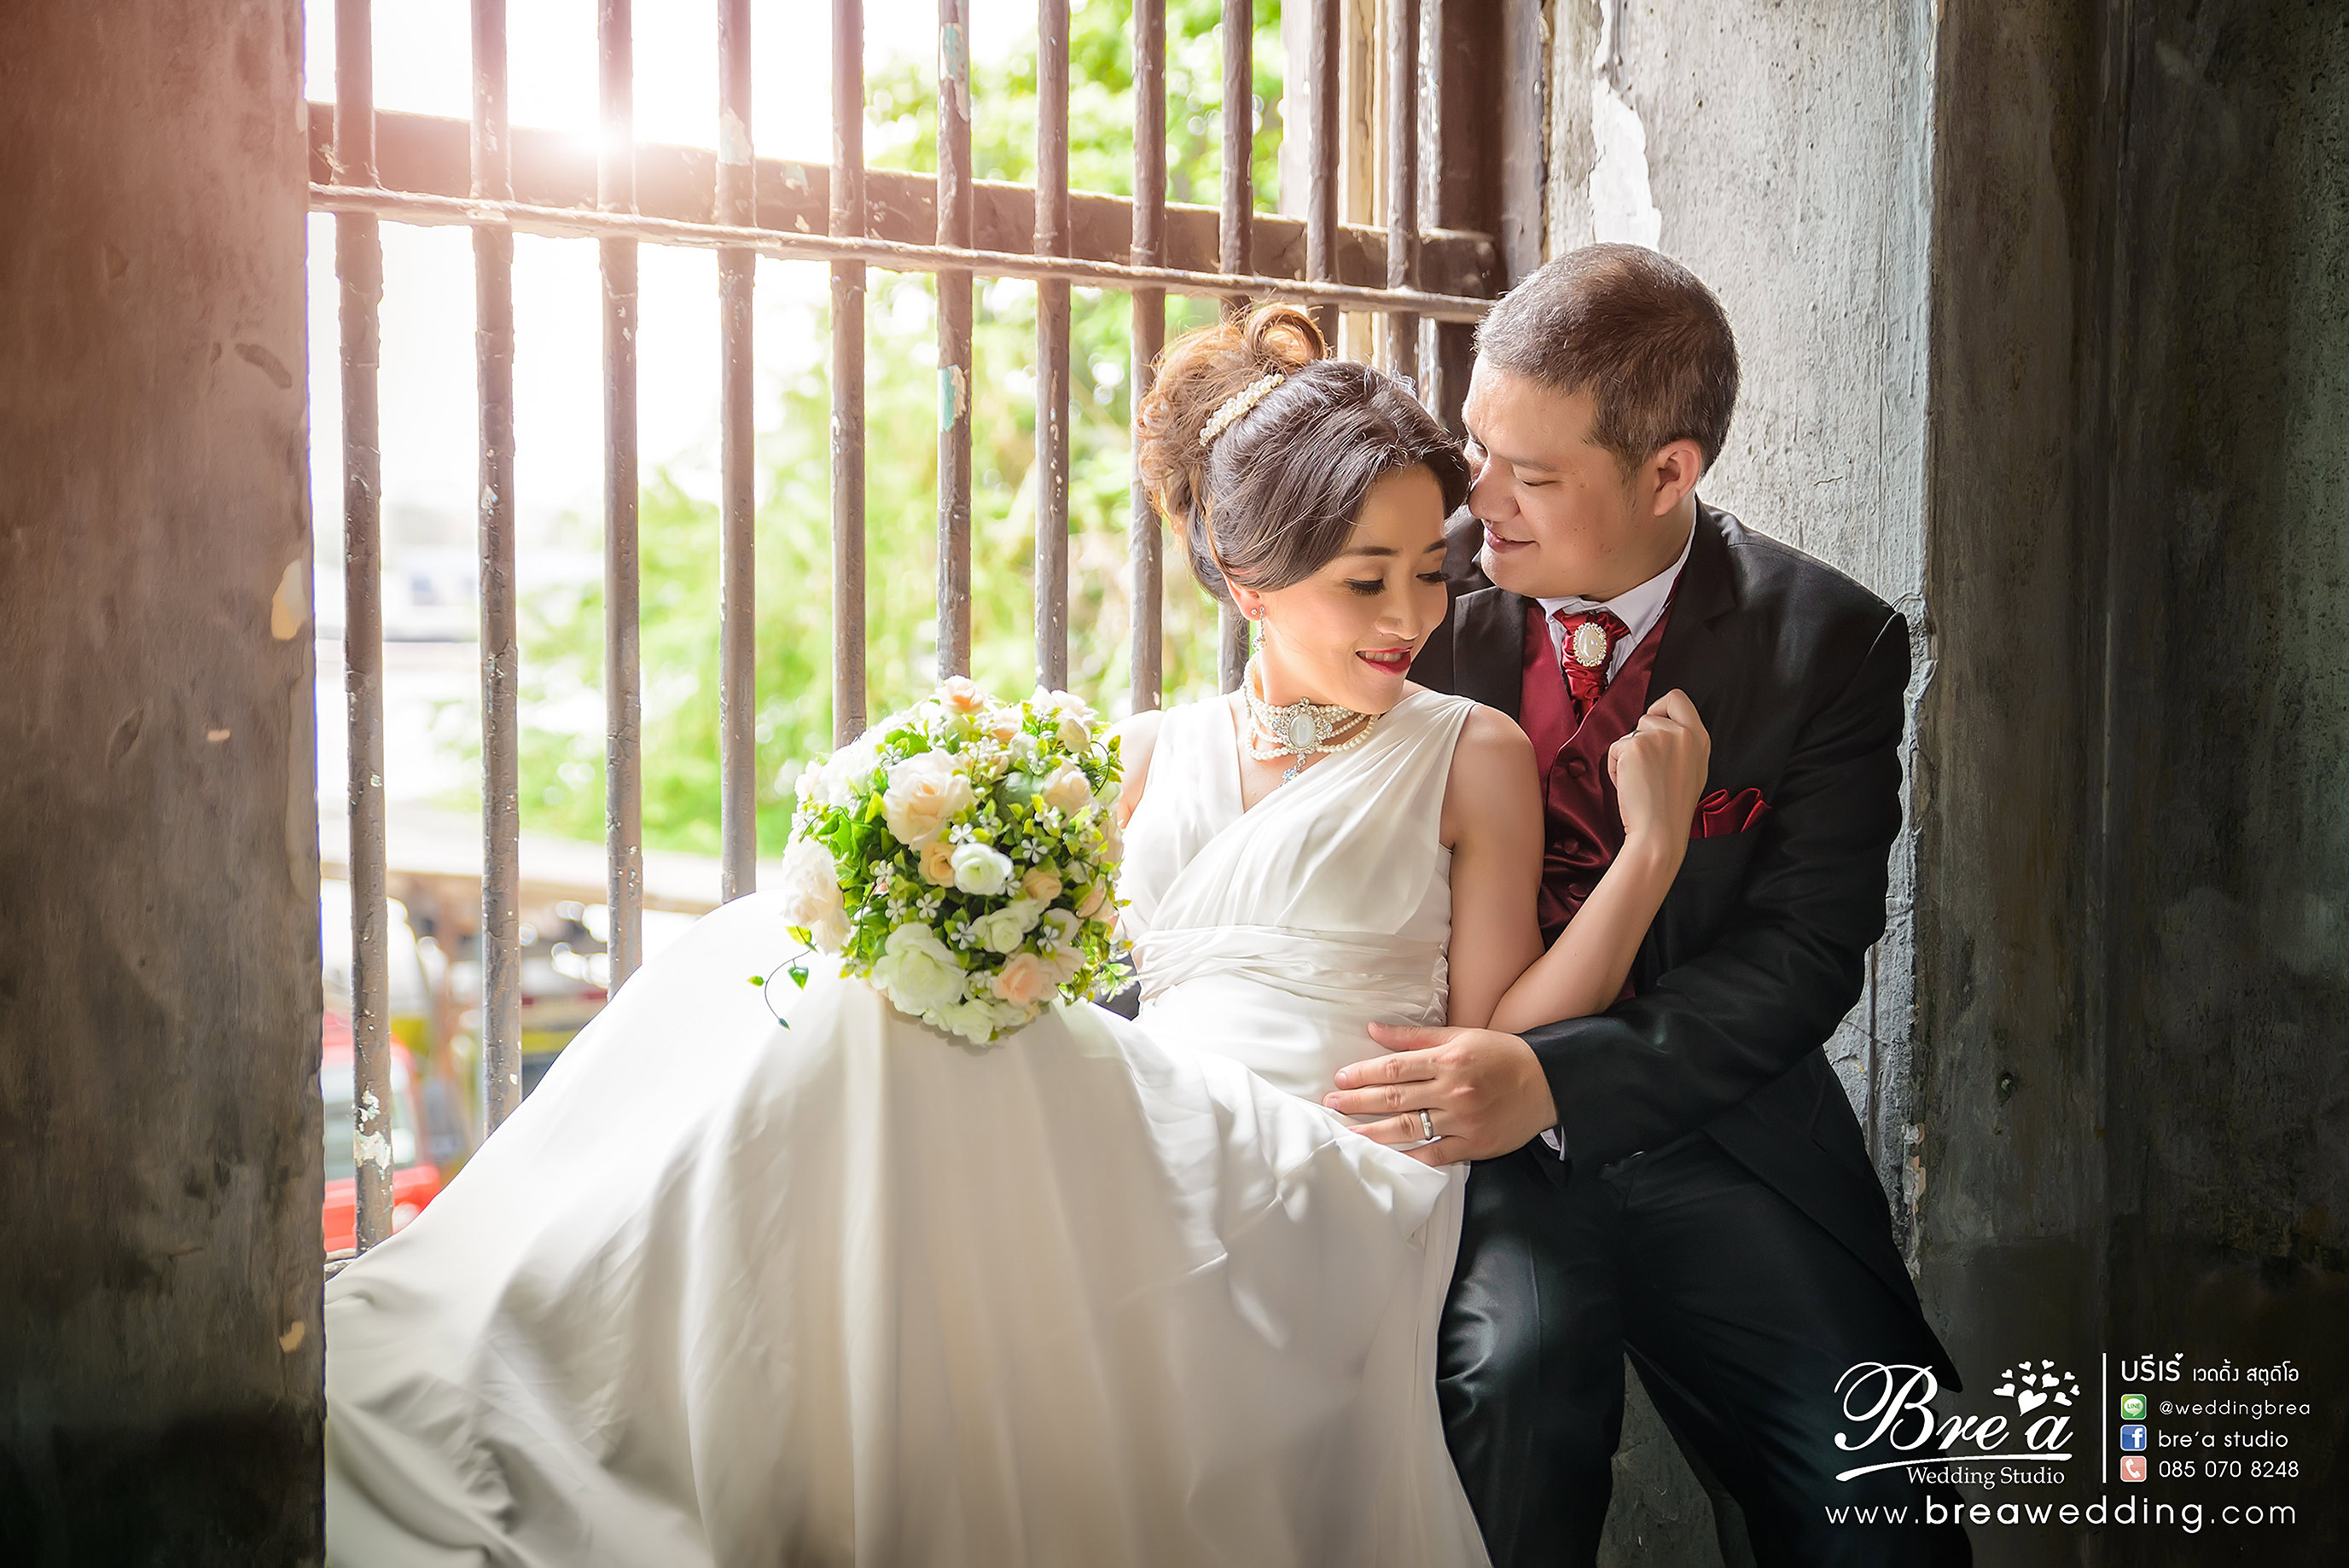 พรีเวดดิ้ง ถ่ายรูปแต่งงาน ร้านเวดดิ้ง หาช่างภาพเวดดิ้ง เวดดิ้ง นนทบุรี